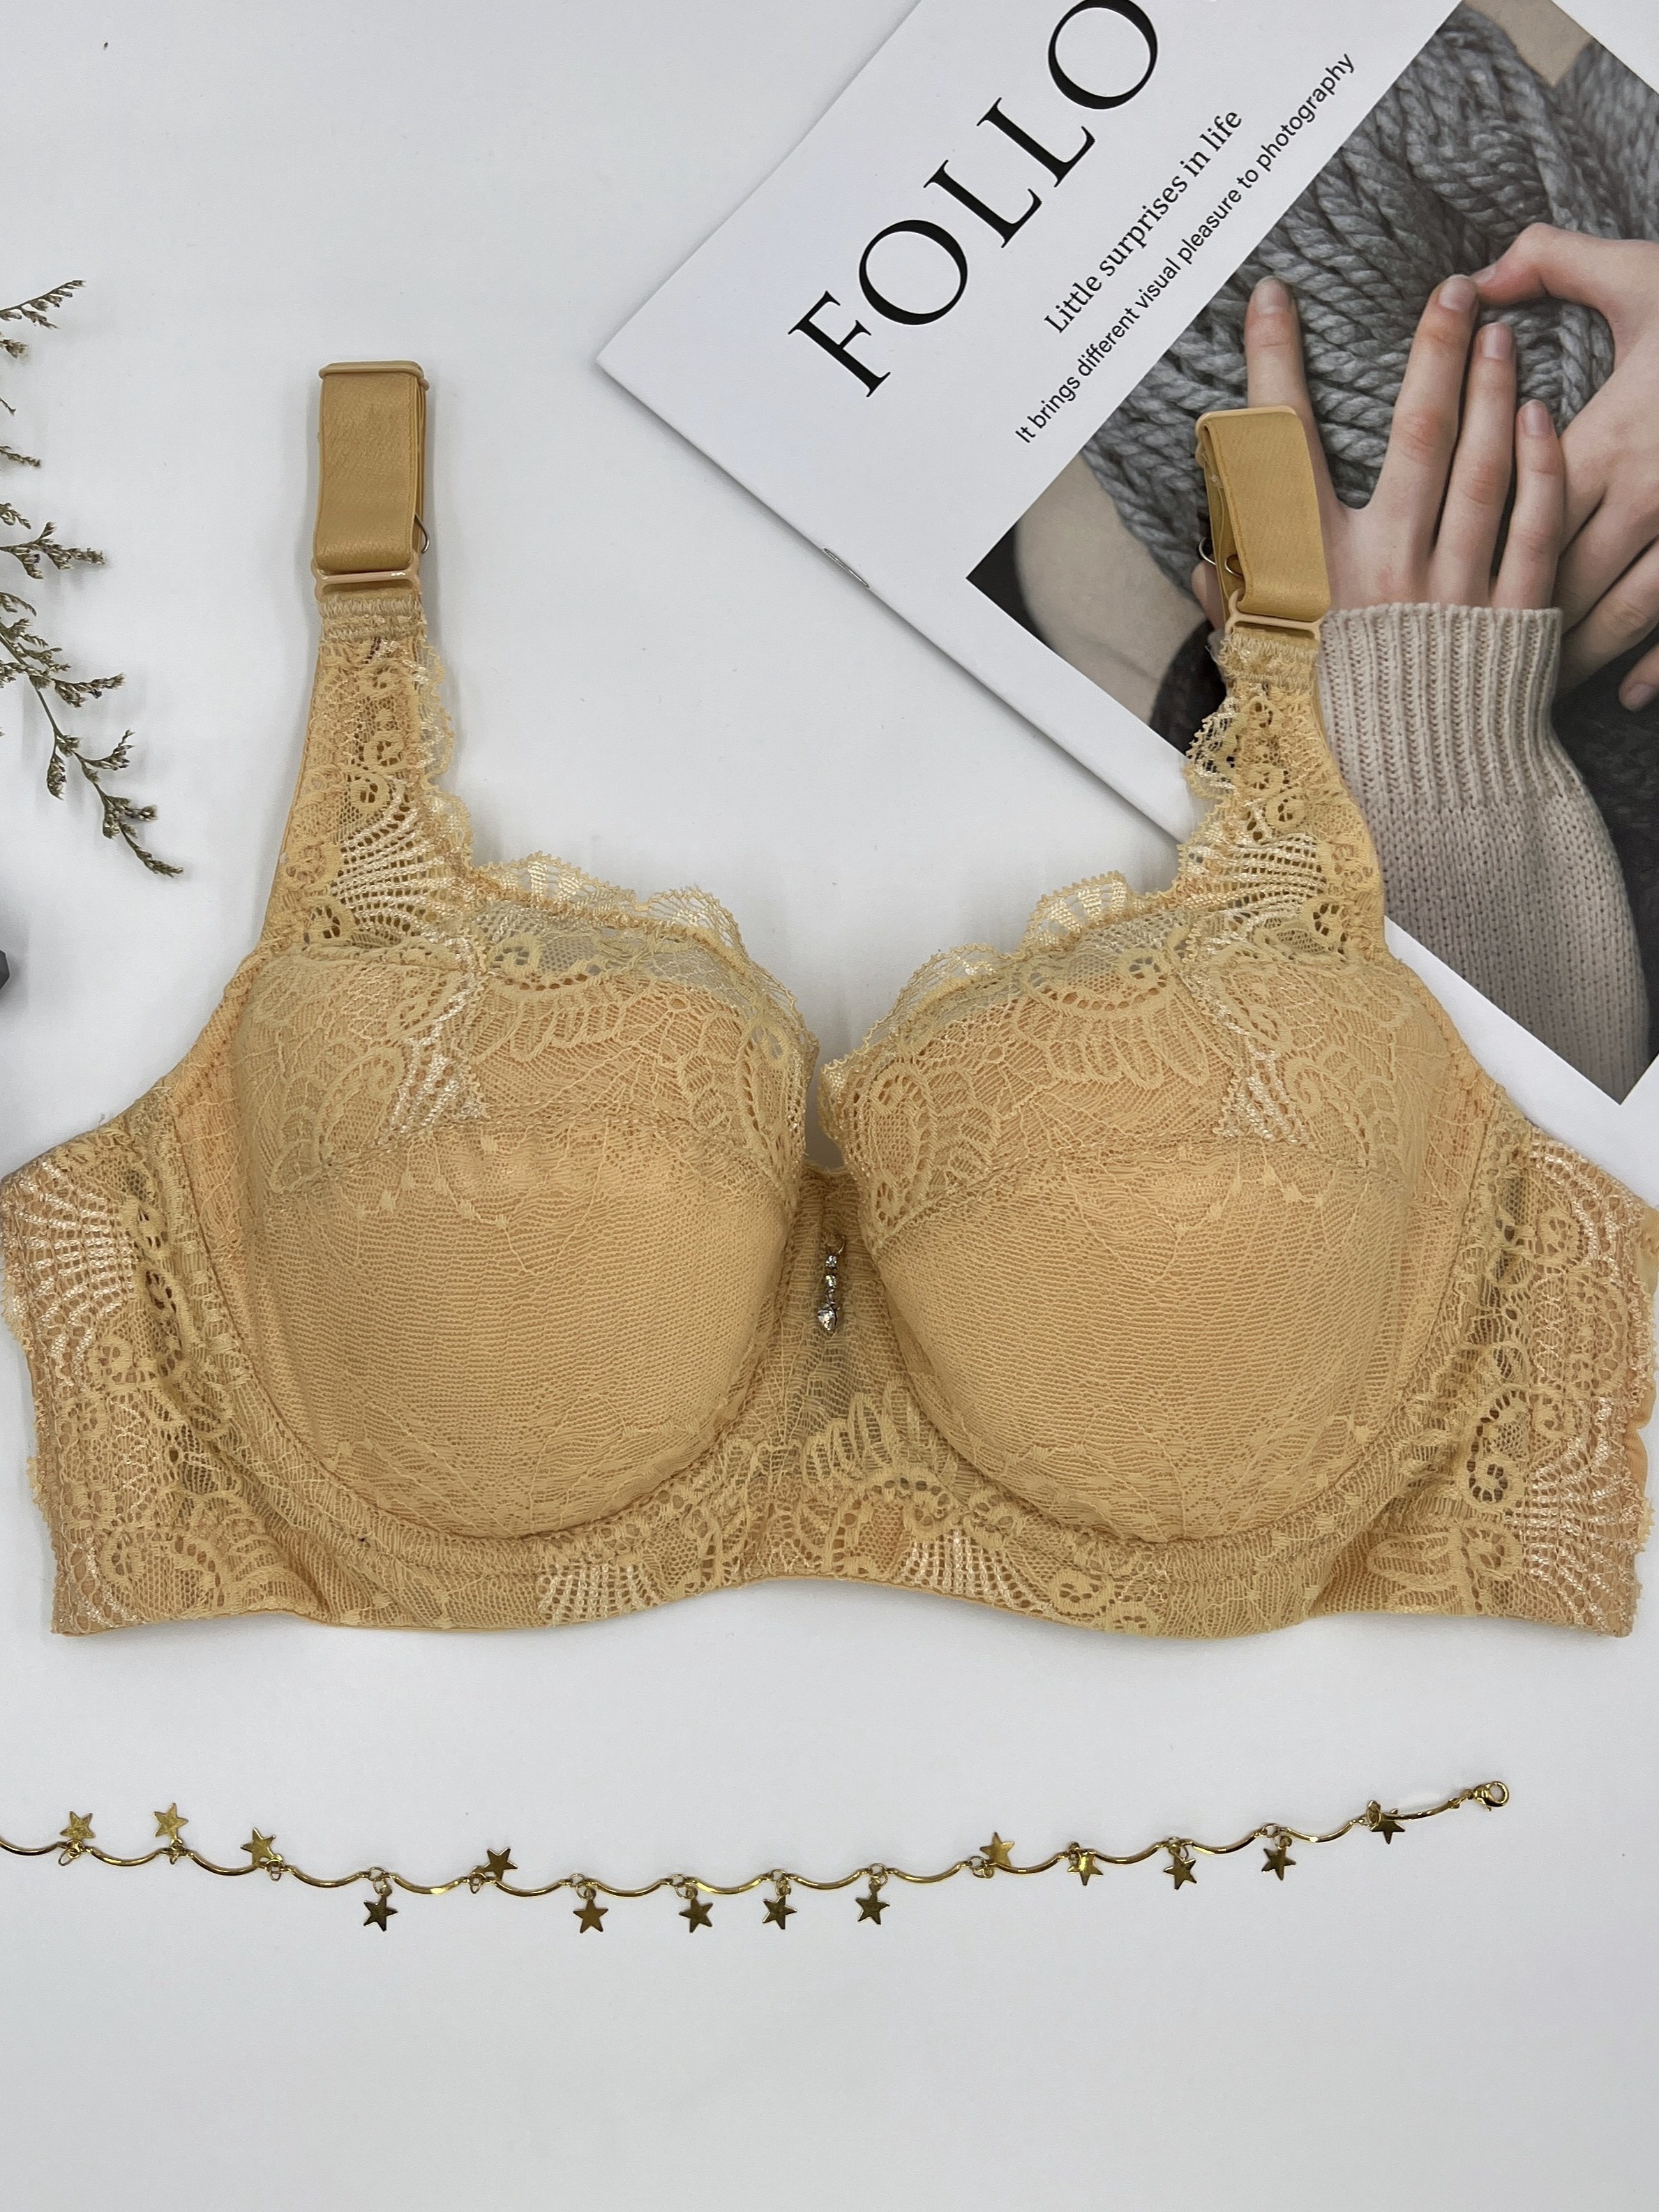 Buy online Padded Bra from lingerie for Women by Littu Blouse for